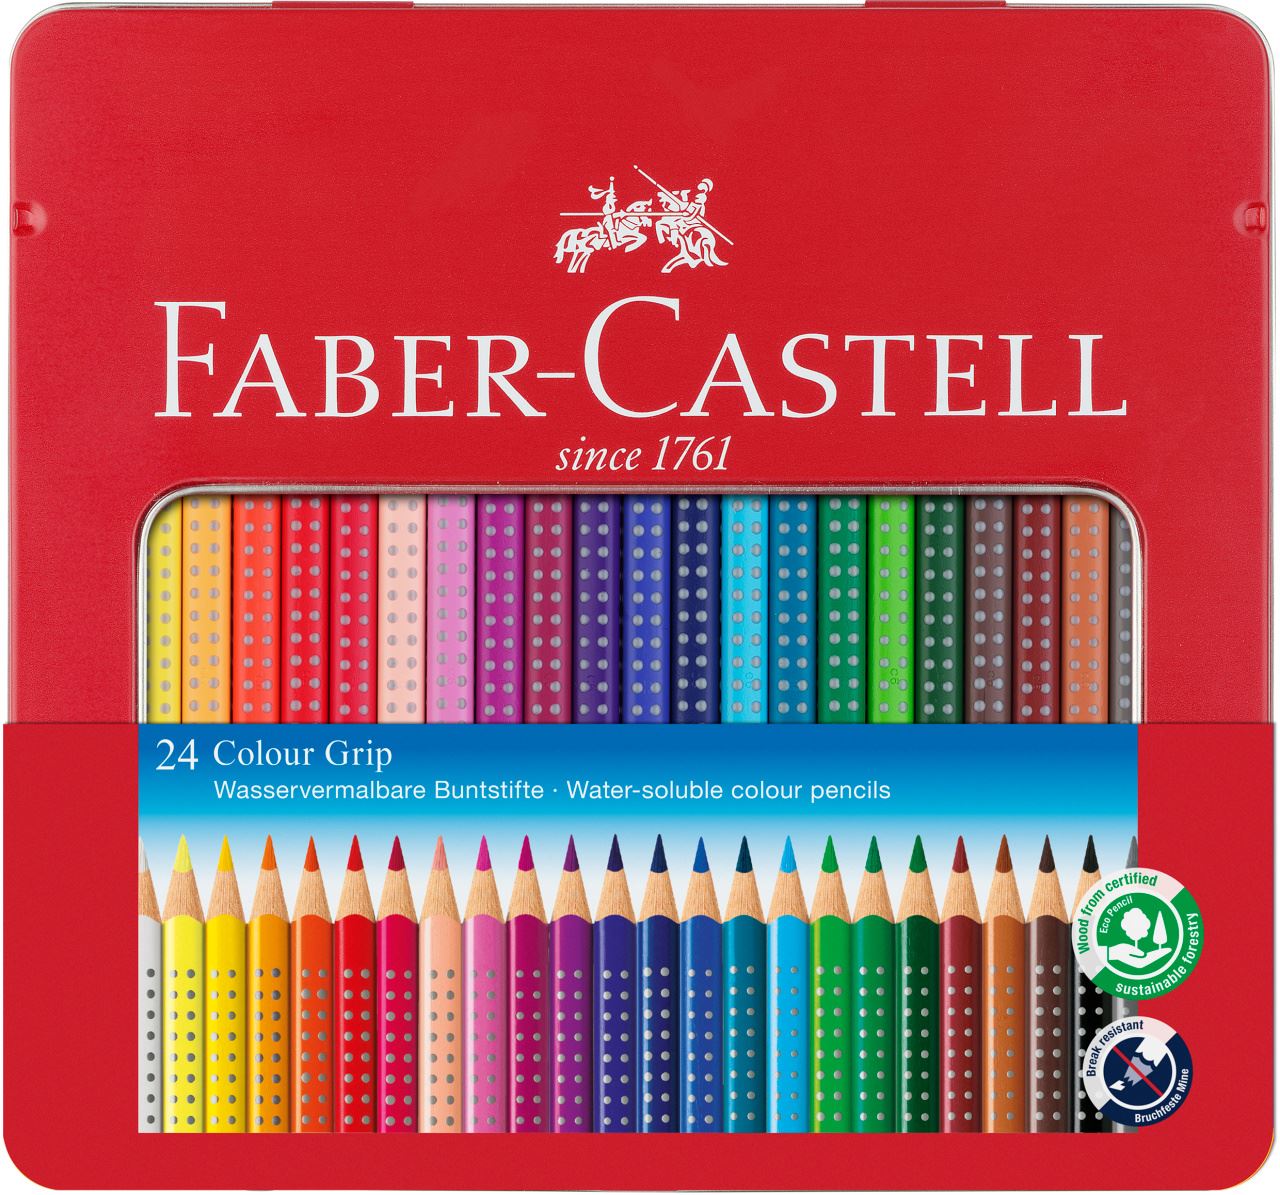 Faber-Castell 117524 Crayons de couleur Albrecht Dürer boîte métal de 24 & 183800 Taille-crayon GRIP 2001 Trio argent 